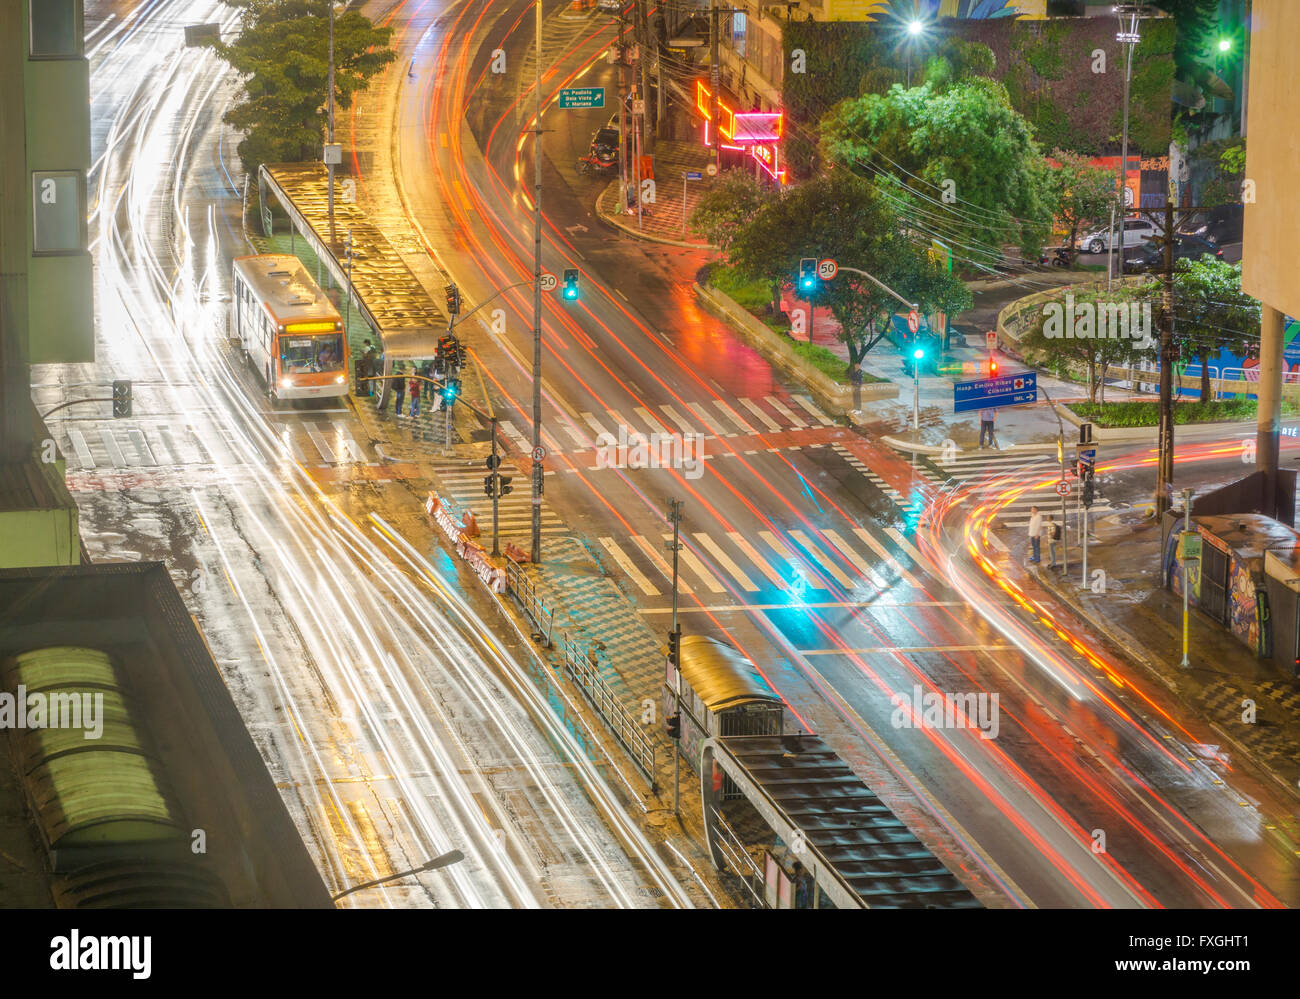 Traffico intenso in Consolacao avenue, Sao Paulo, Brasile, dove gli autobus, auto e persone condividono lo stesso posto. Foto Stock